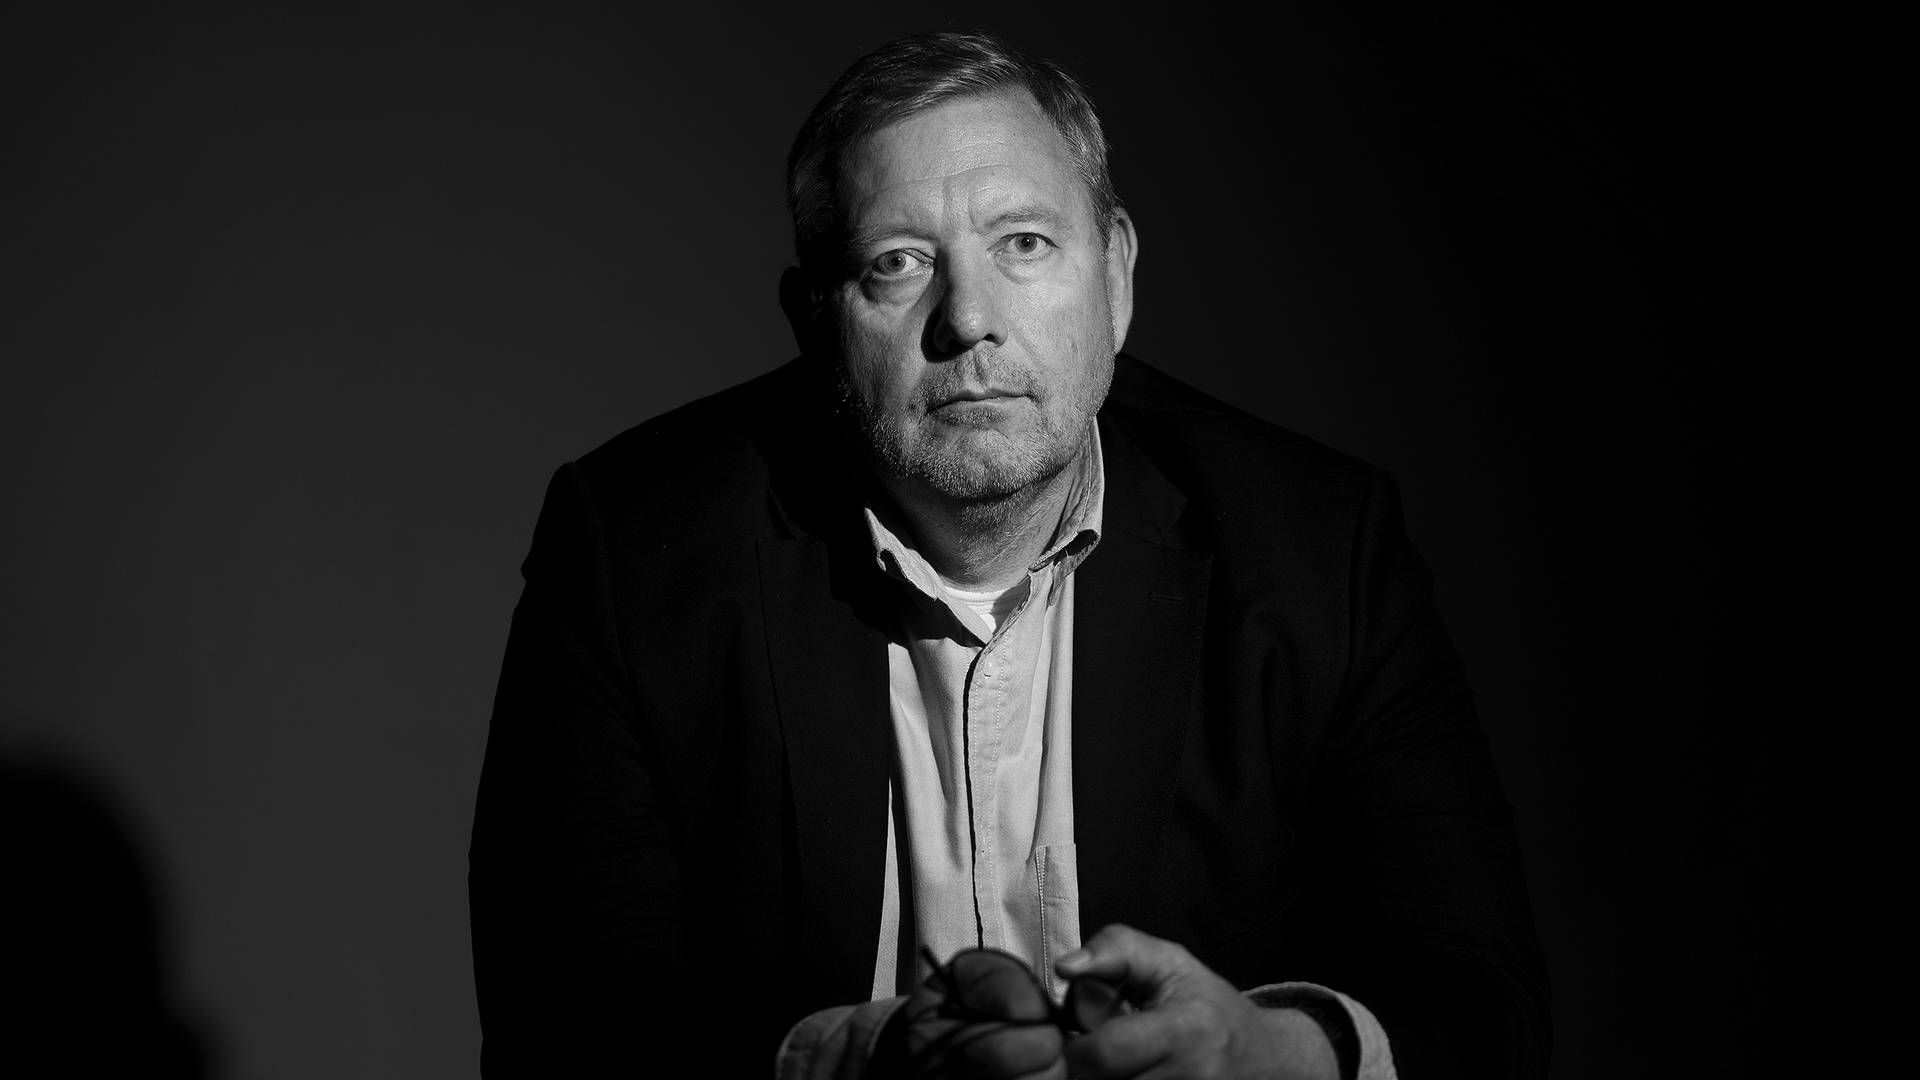 Adm. direktør i Sjællandske Medier, Jens Nicolaisen. | Foto: Thomas Olsen, Sjællandske Medier